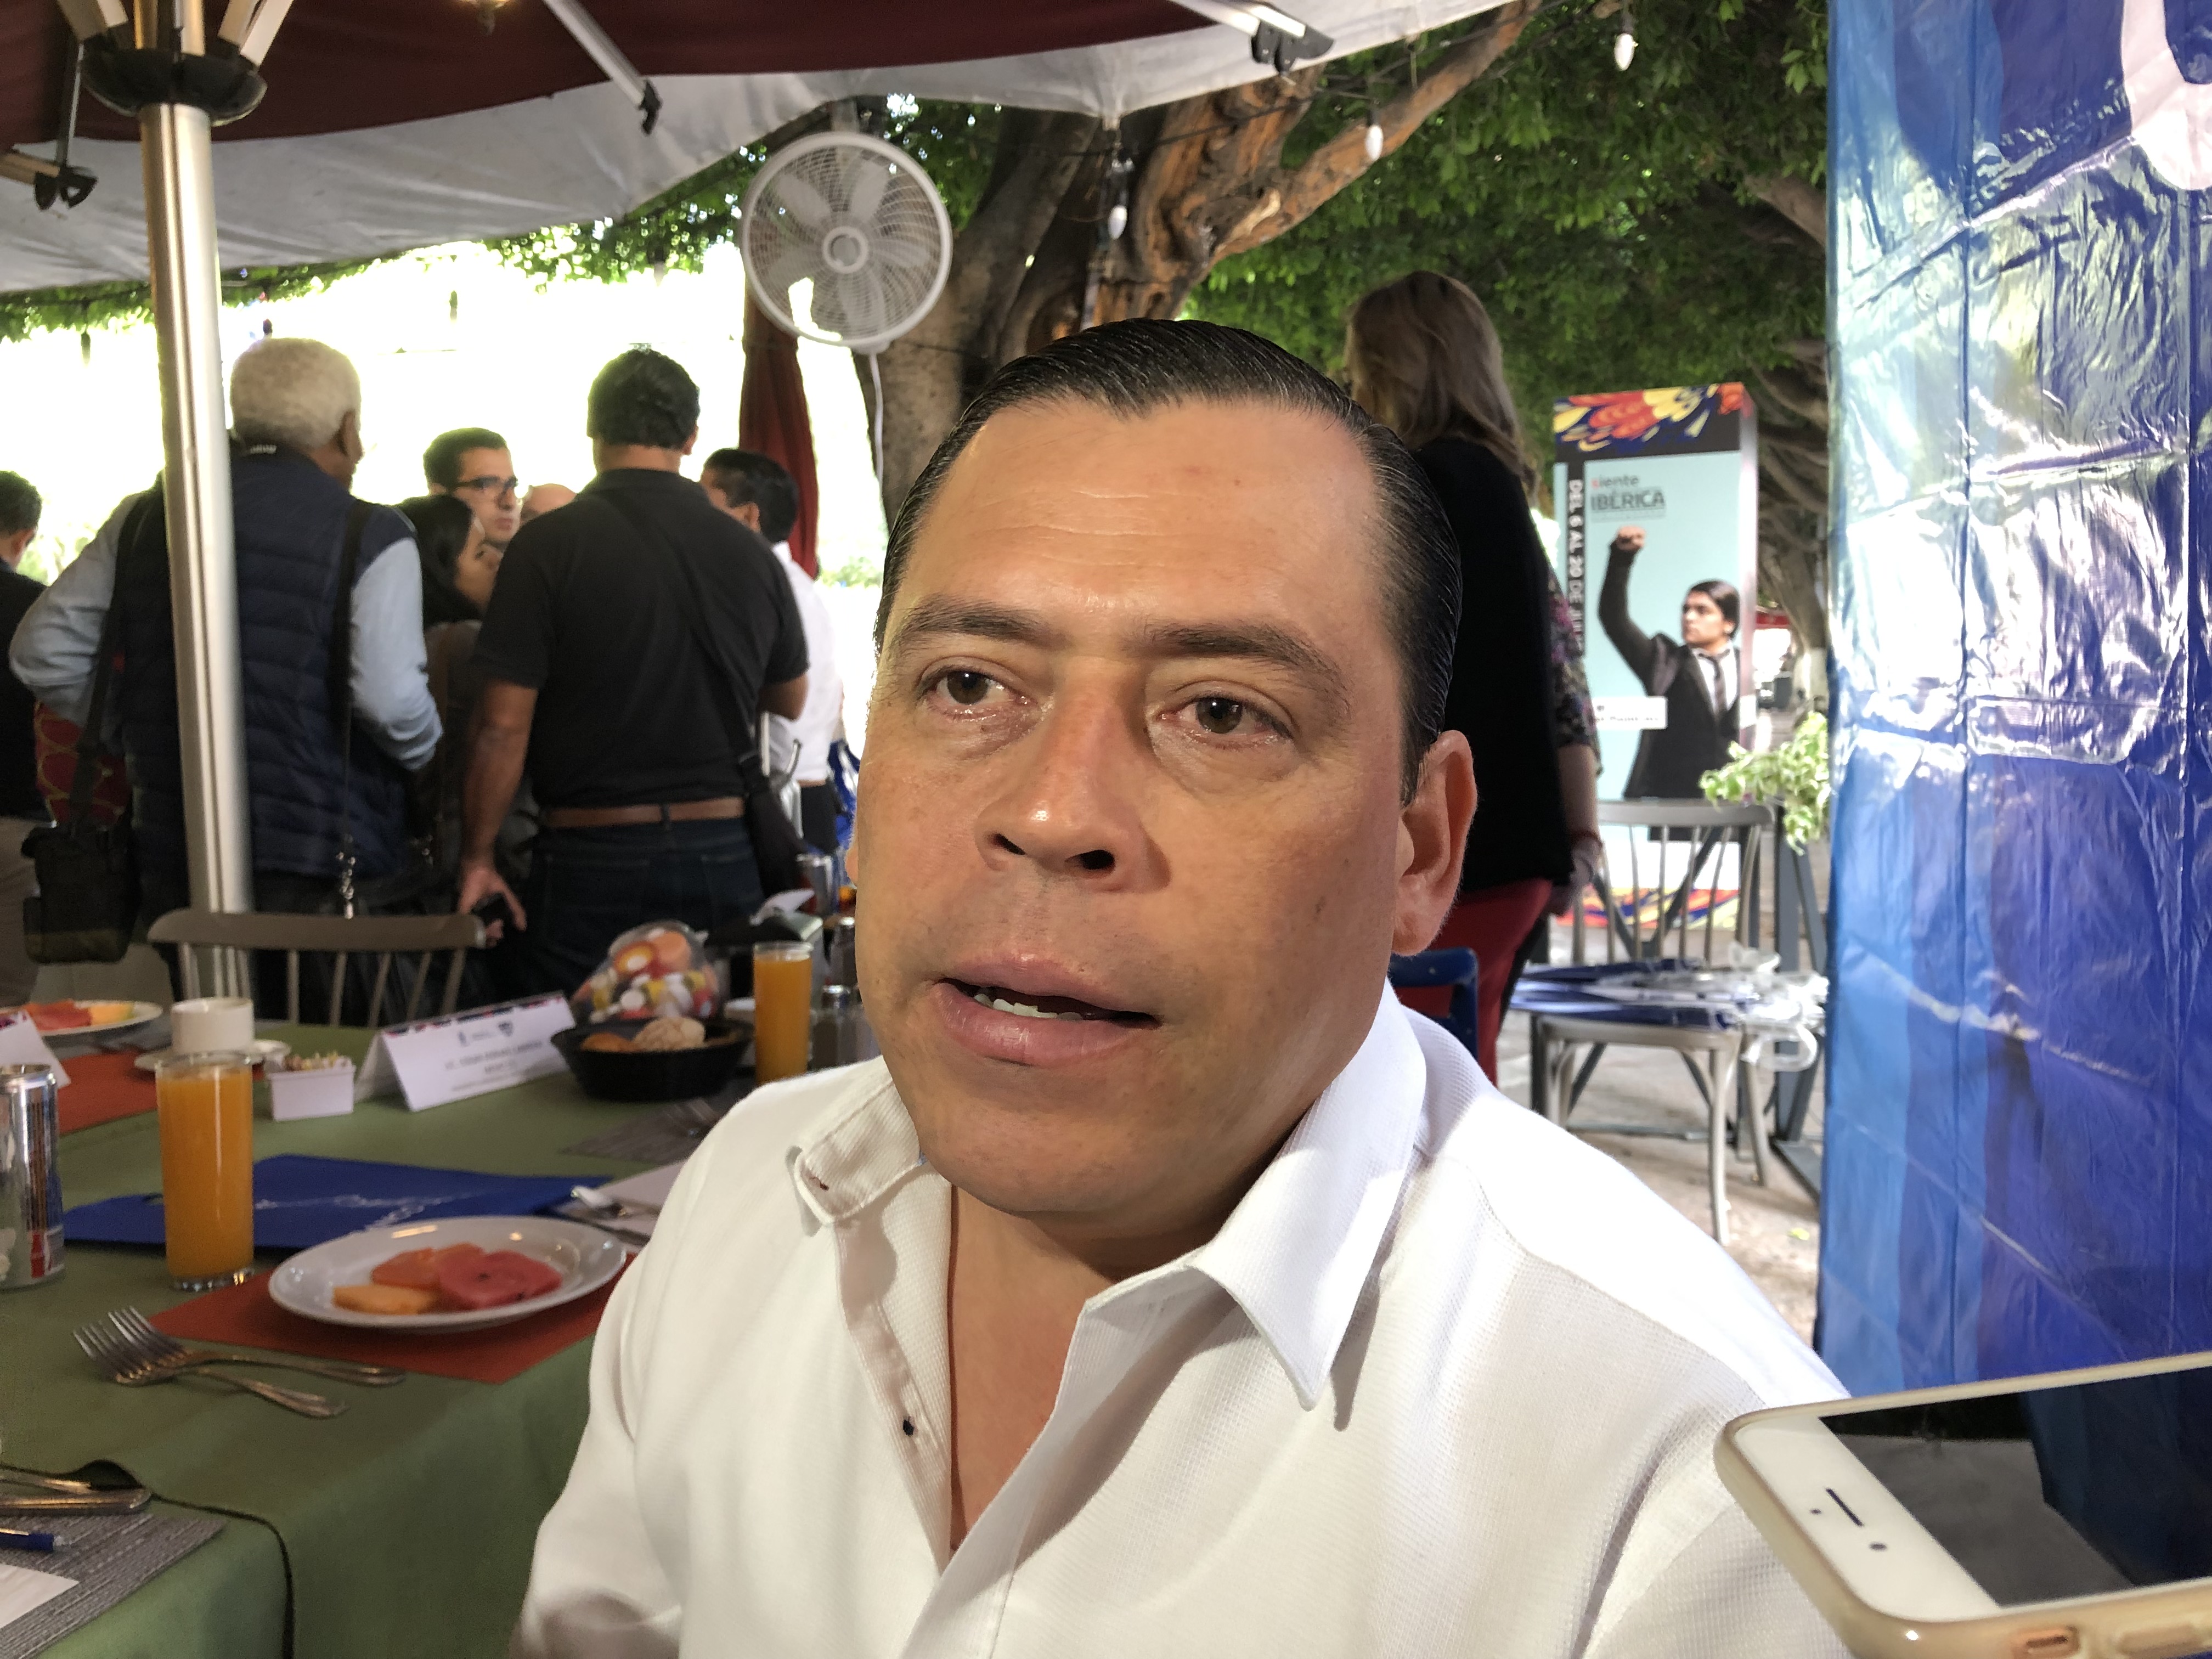  “No ha habido acercamiento entre Gilberto Herrera y Sedesoq”: Tonatiuh Cervantes